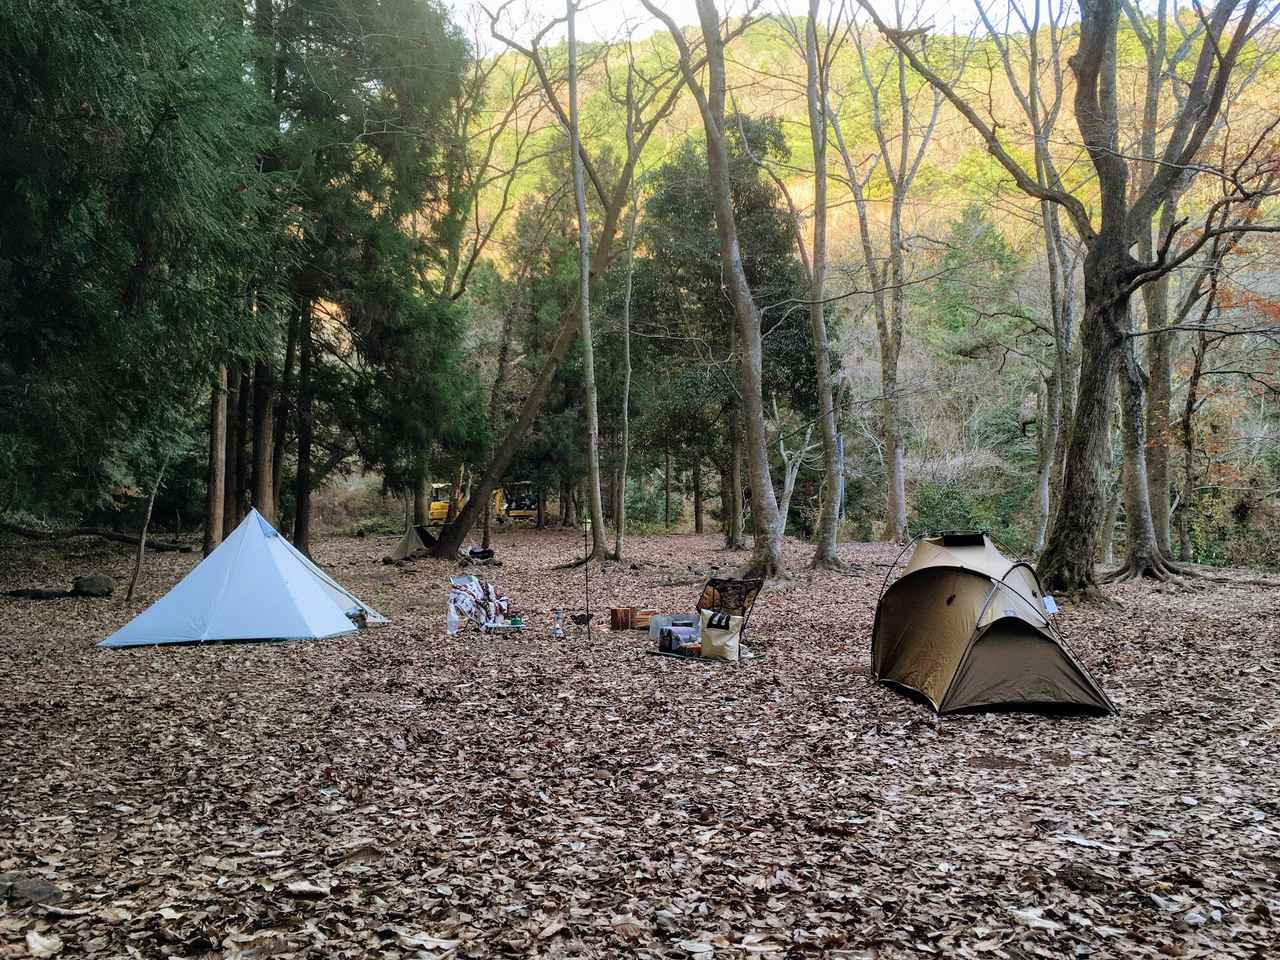 ソロキャンプのもうひとつのスタイル 初心者にもおすすめな ふたりソロキャンプ とは お役立ちキャンプ情報 21年02月04日 日本気象協会 Tenki Jp